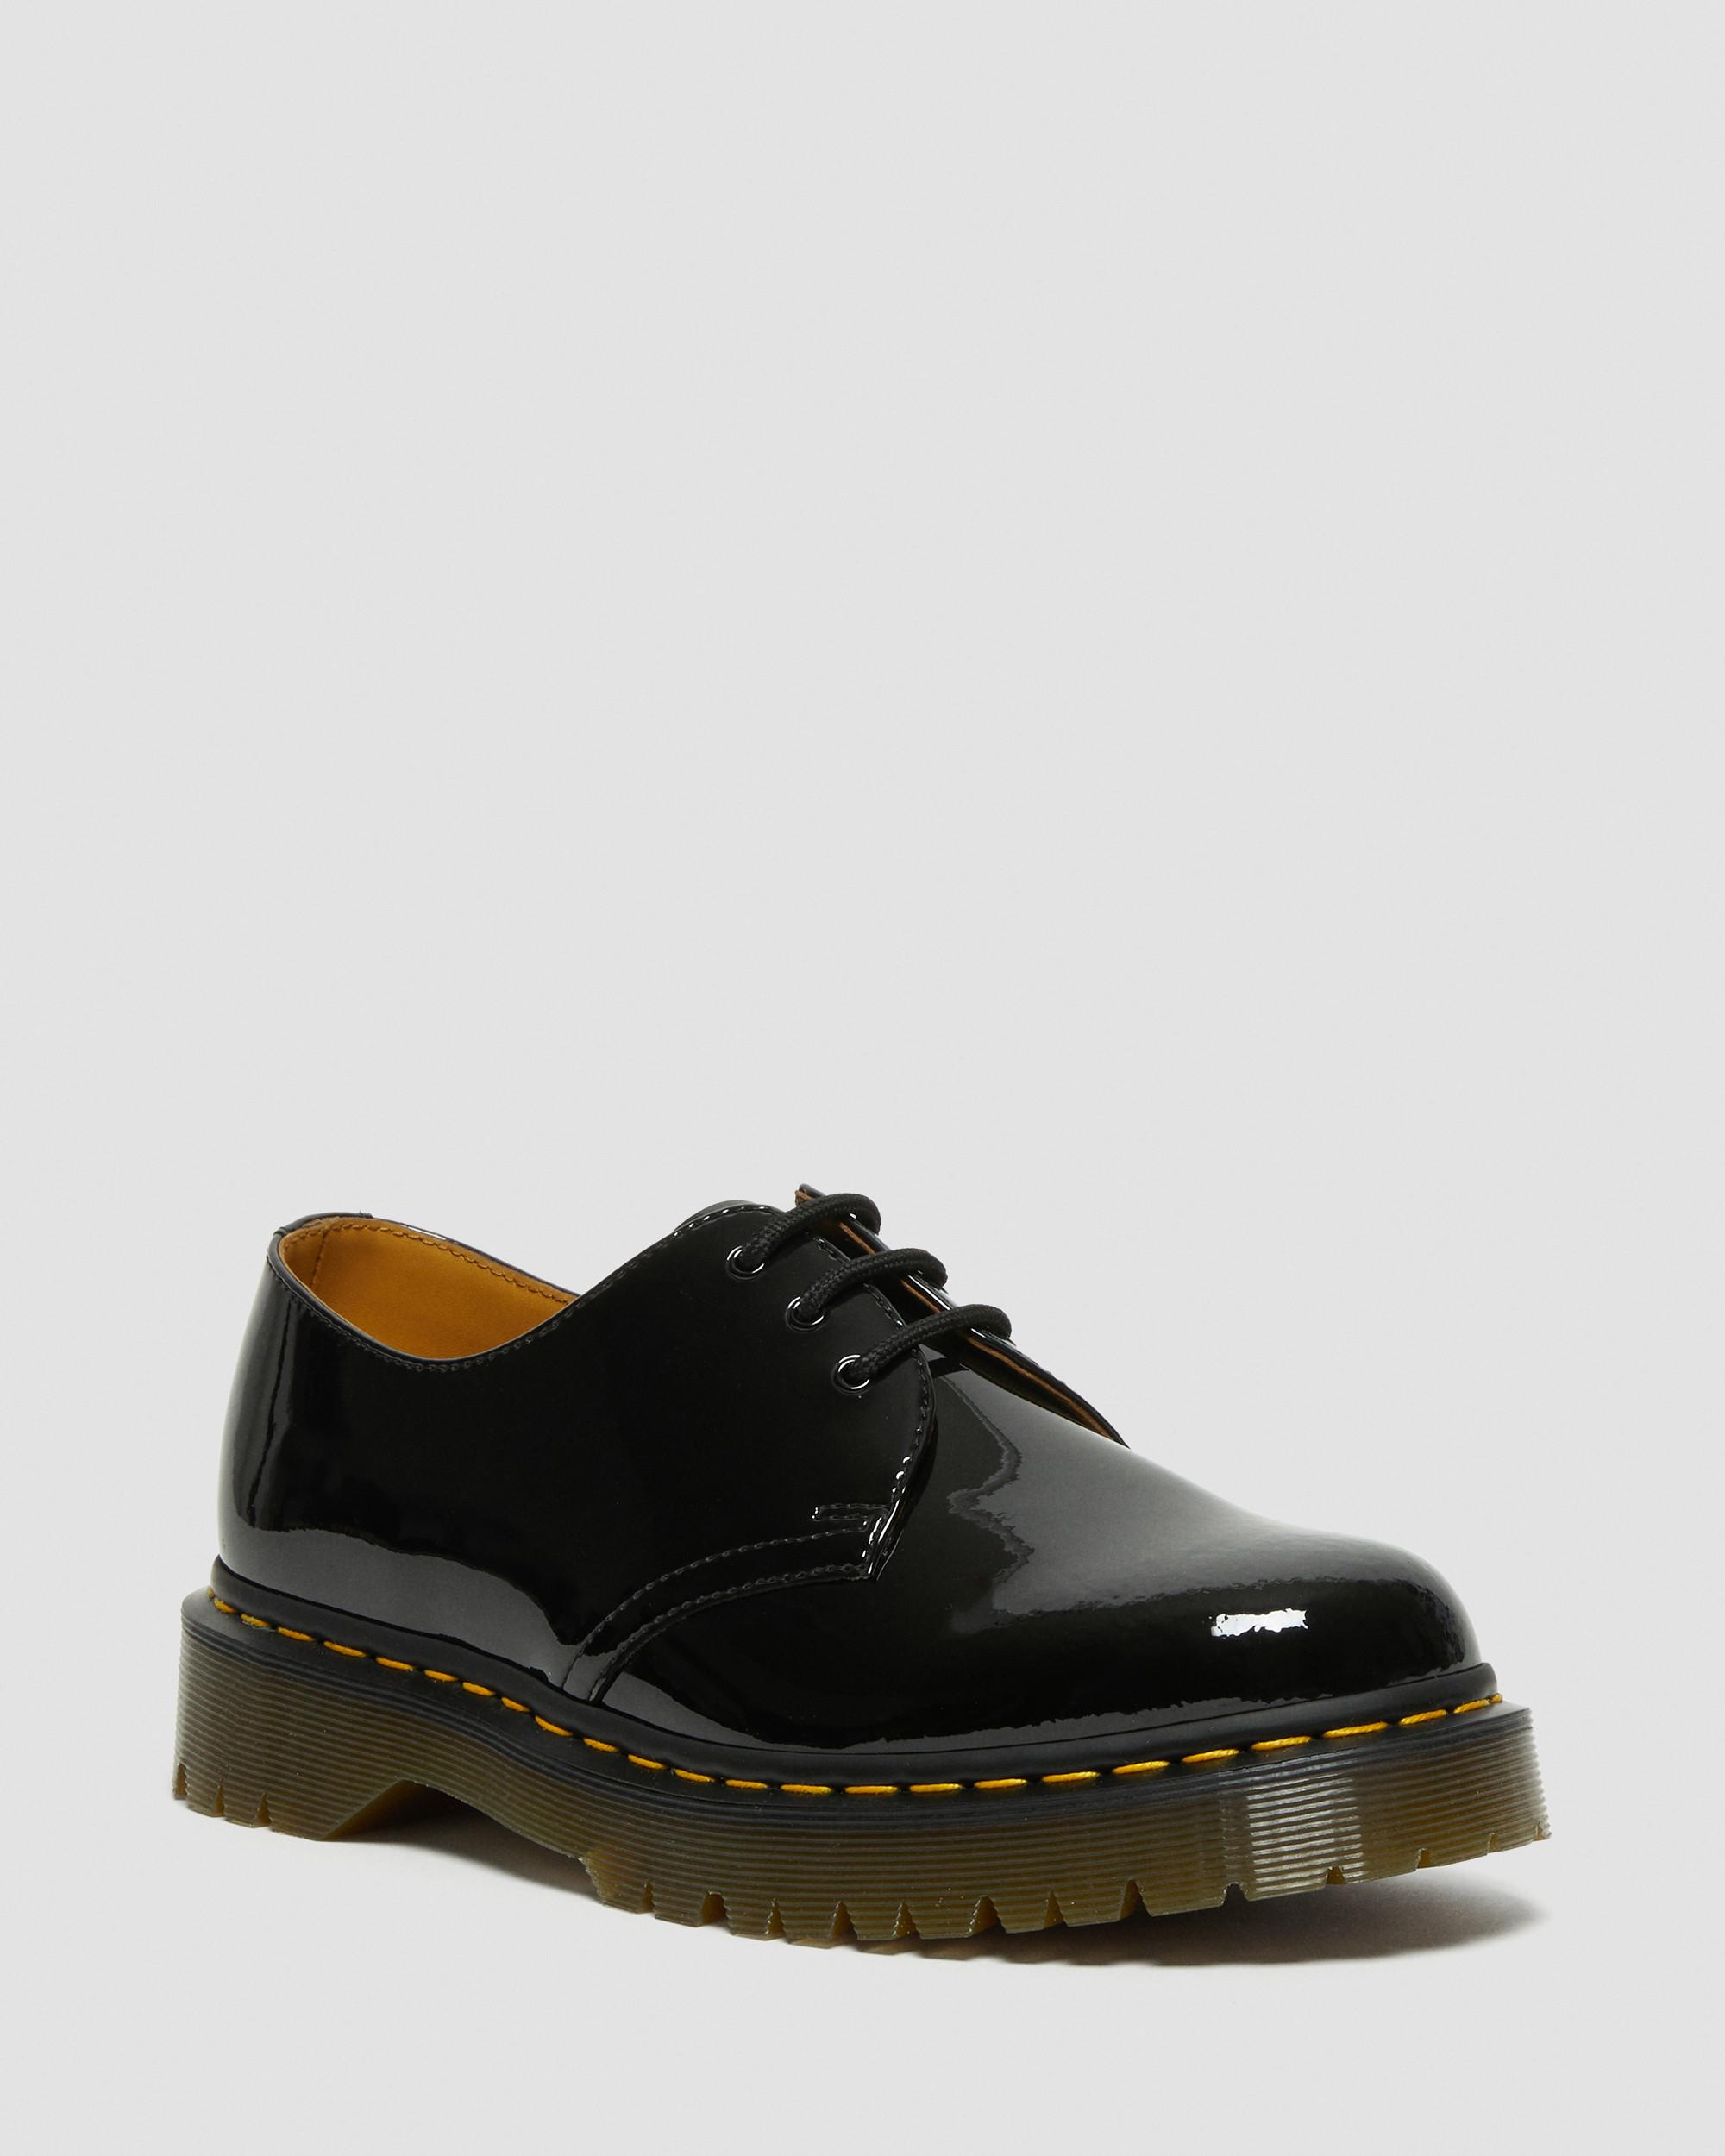 1461 Bex Patent Leather Shoes, Black | Dr. Martens